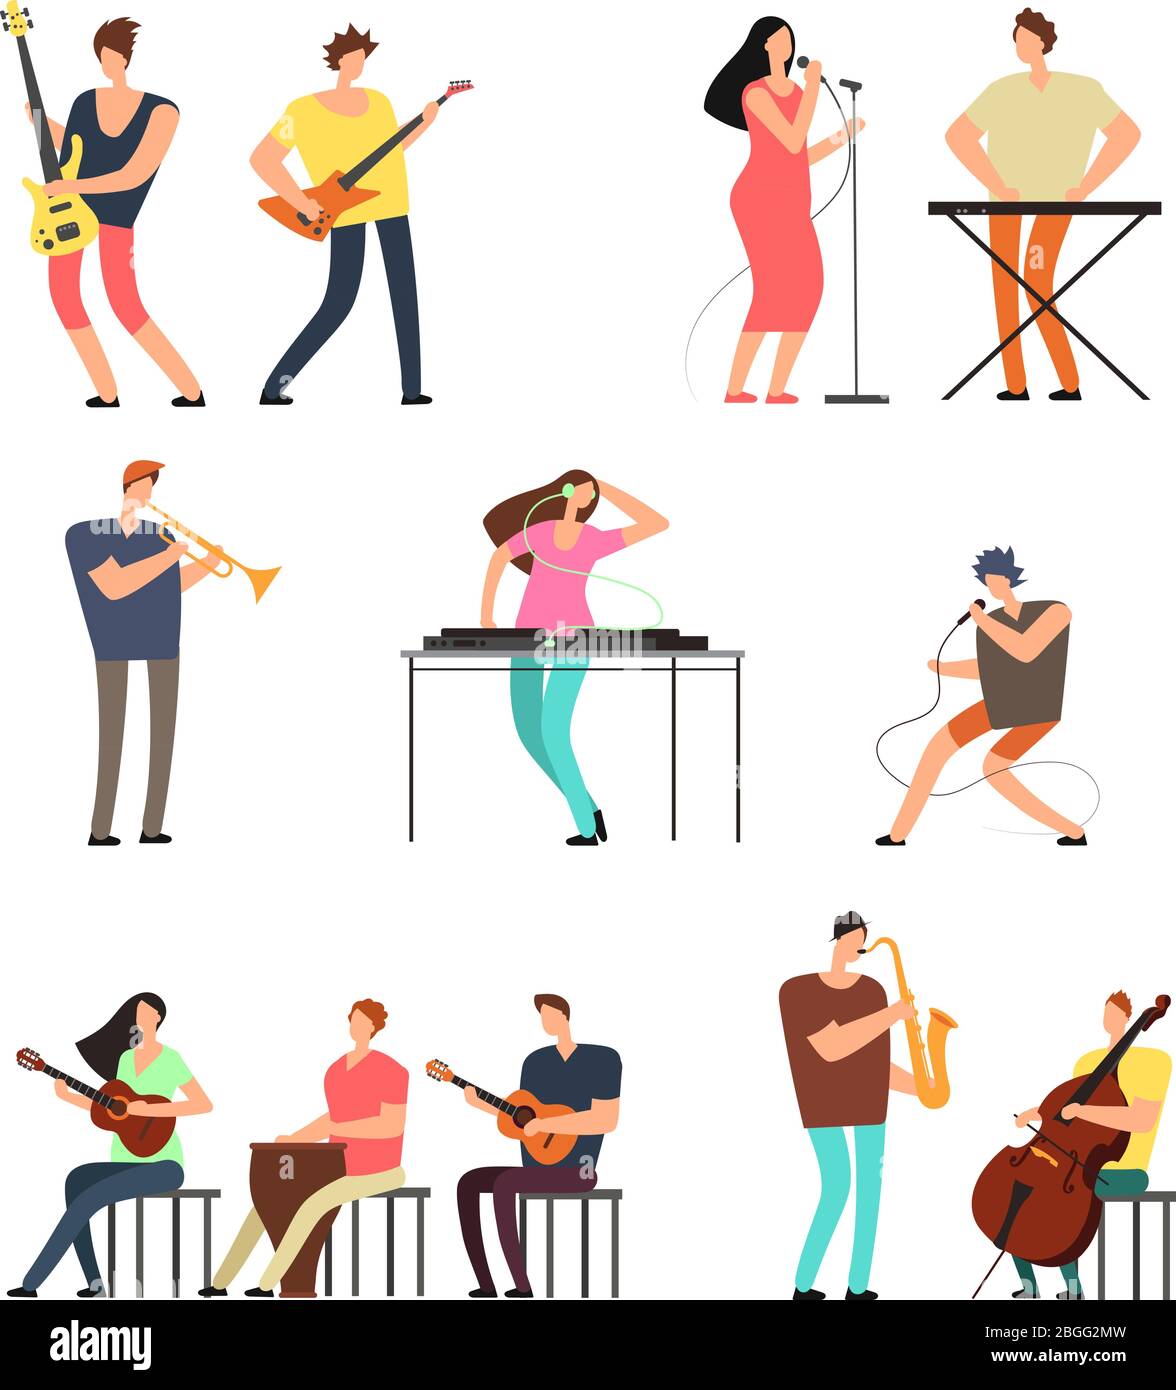 Menschen, die Musik spielen. Musiker mit Musikinstrumenten. Vektor Cartoon Zeichen isoliert. Illustration von Musikerleistung und Musikkonzert mit Gitarreninstrument Stock Vektor